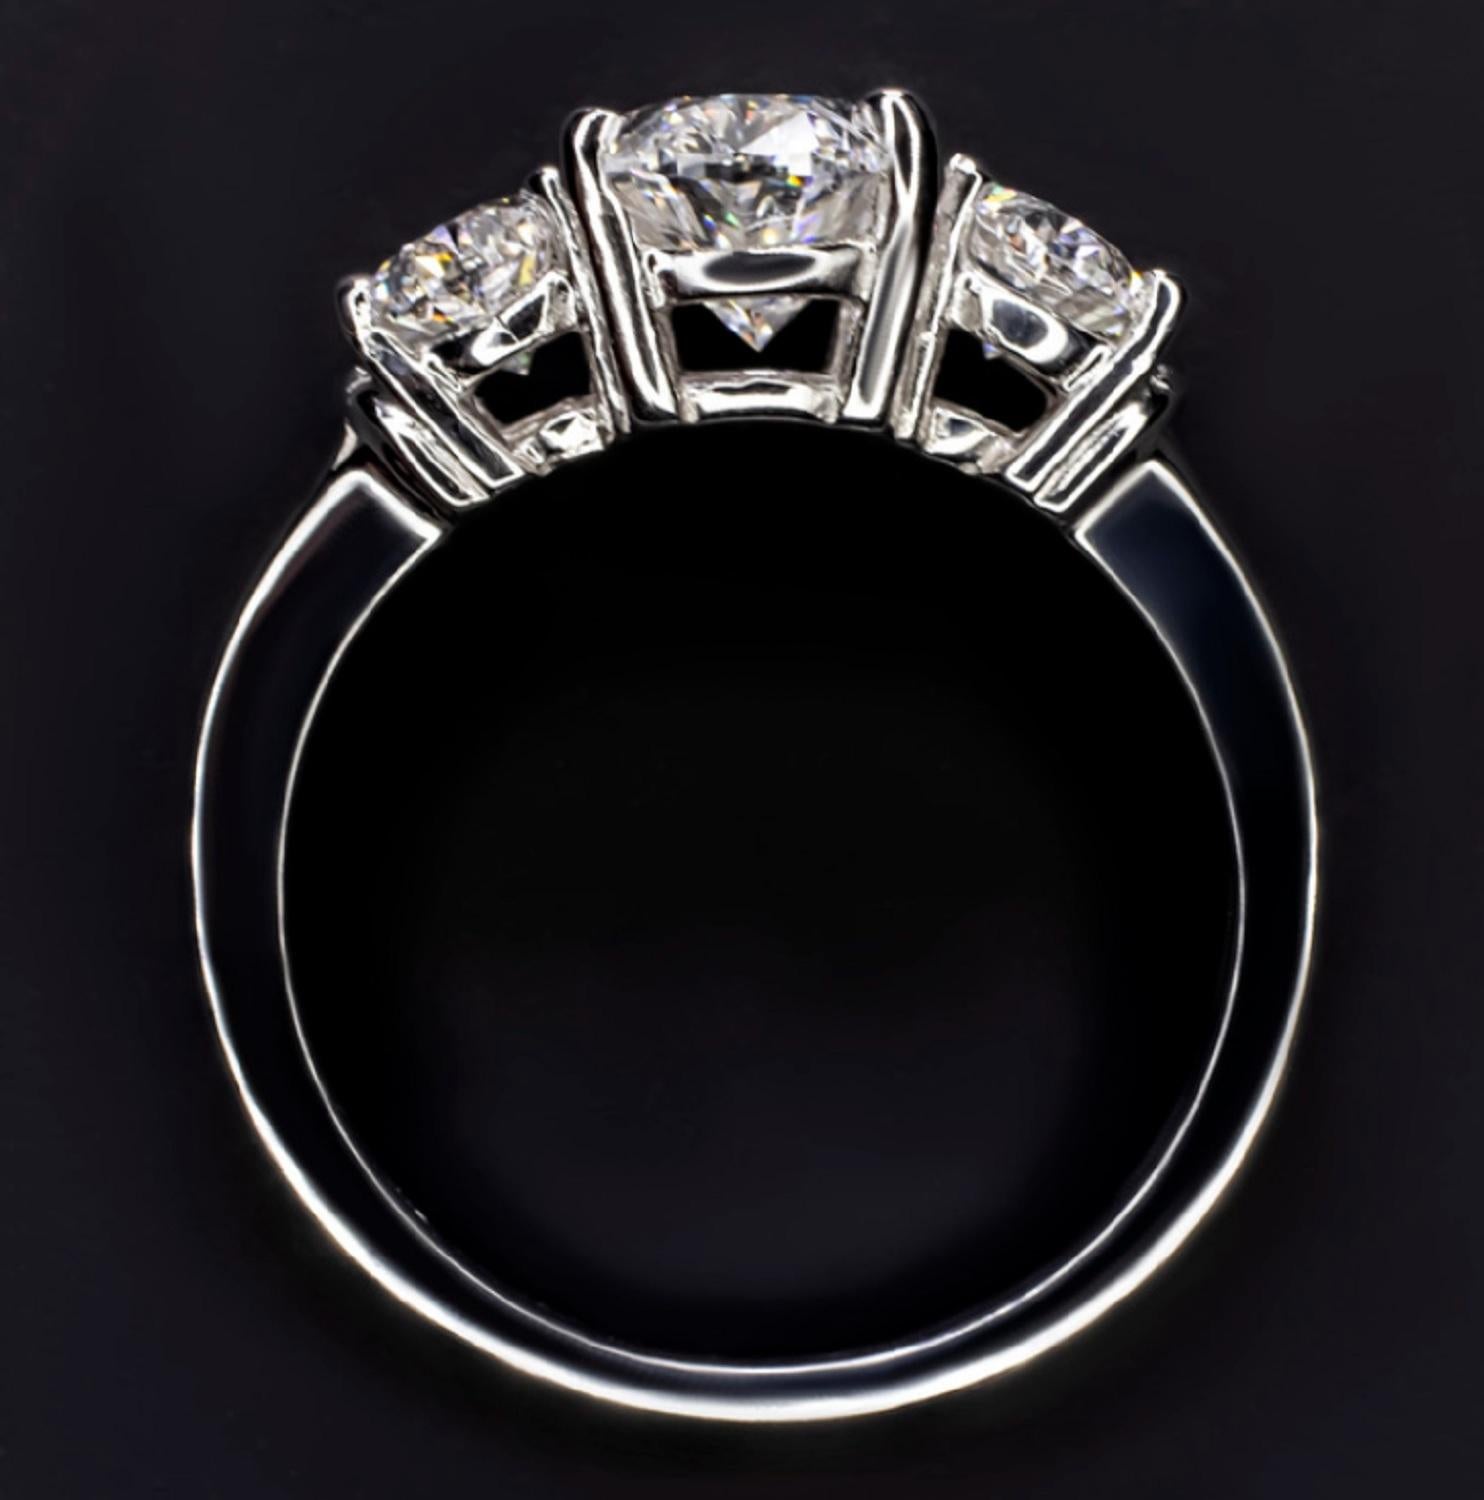 3 carat oval diamond ring